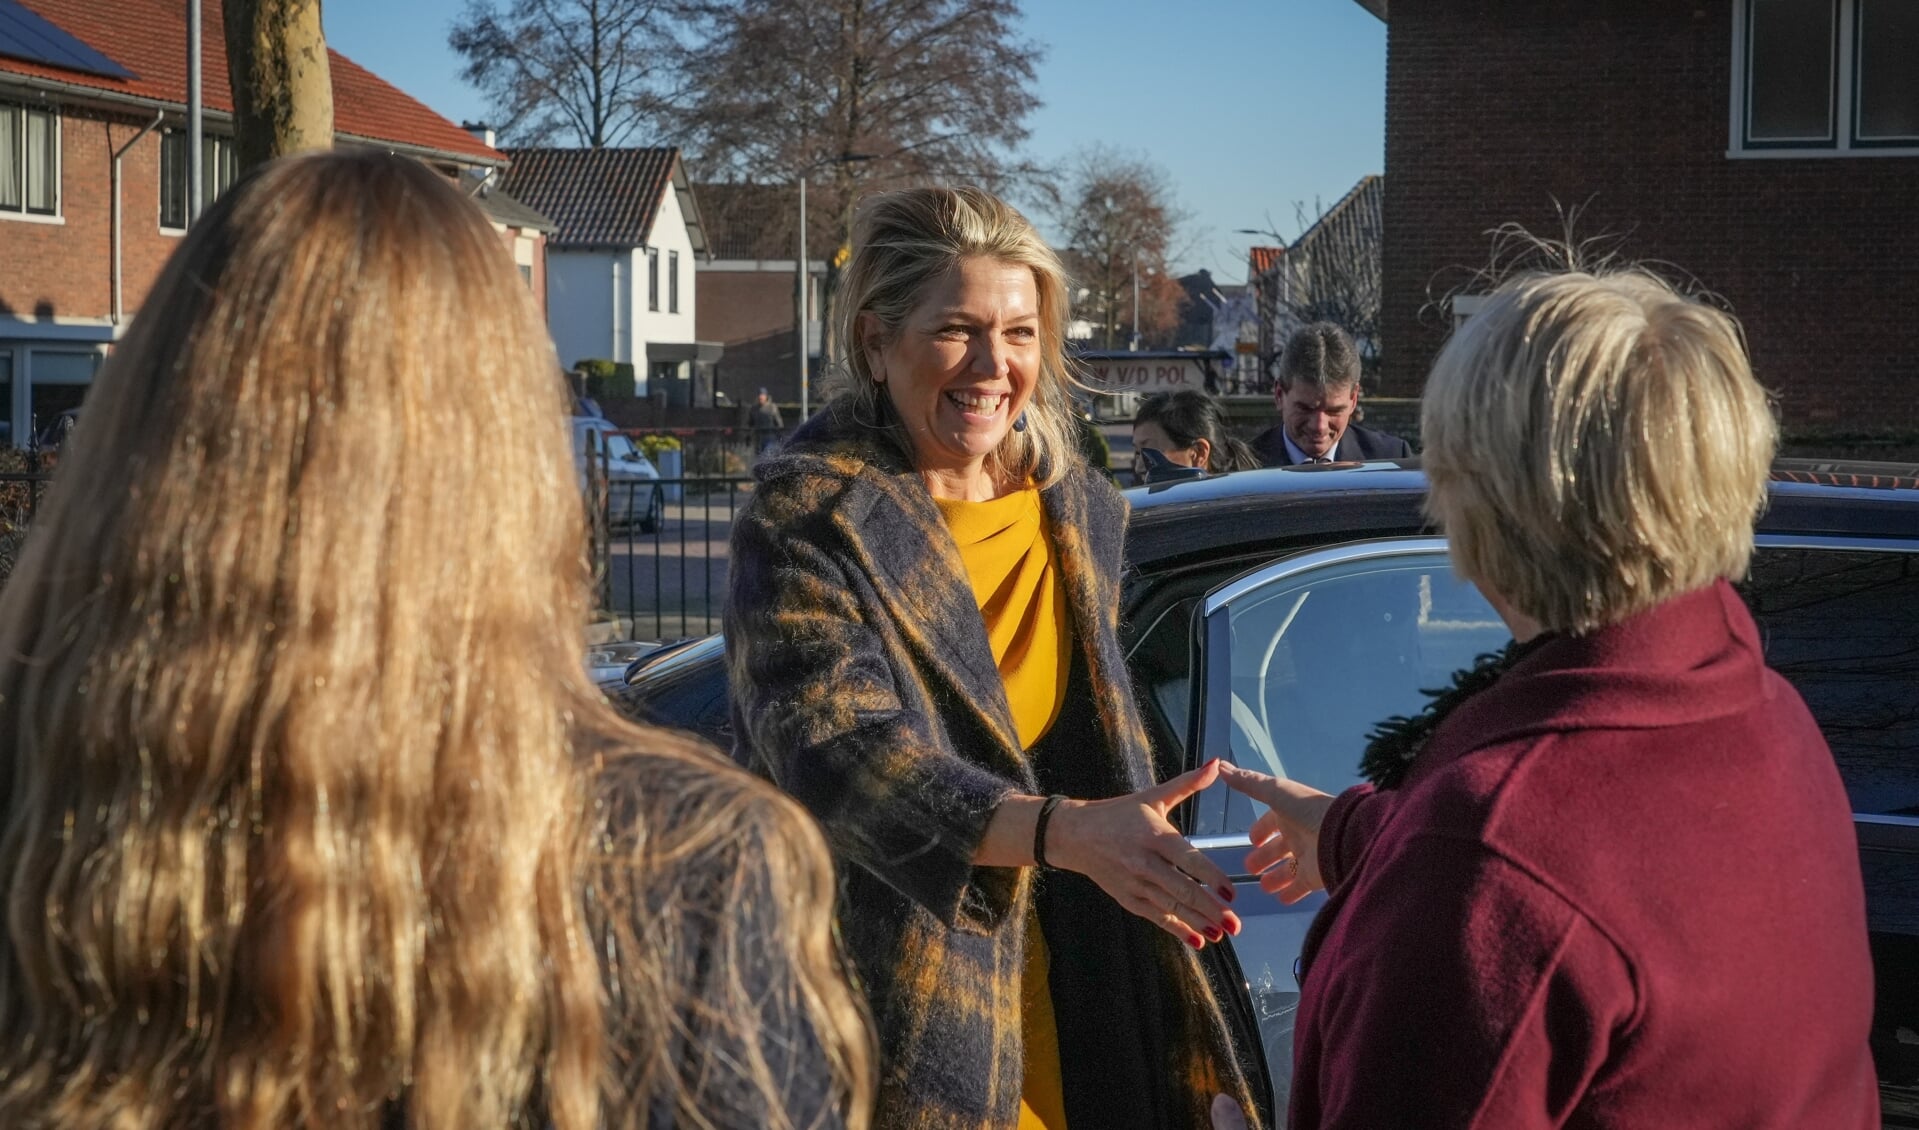 Koningin Maxima sprak in Nijkerk met inwoners, vrijwilligers en hulporganisaties over hun ervaringen met armoede.